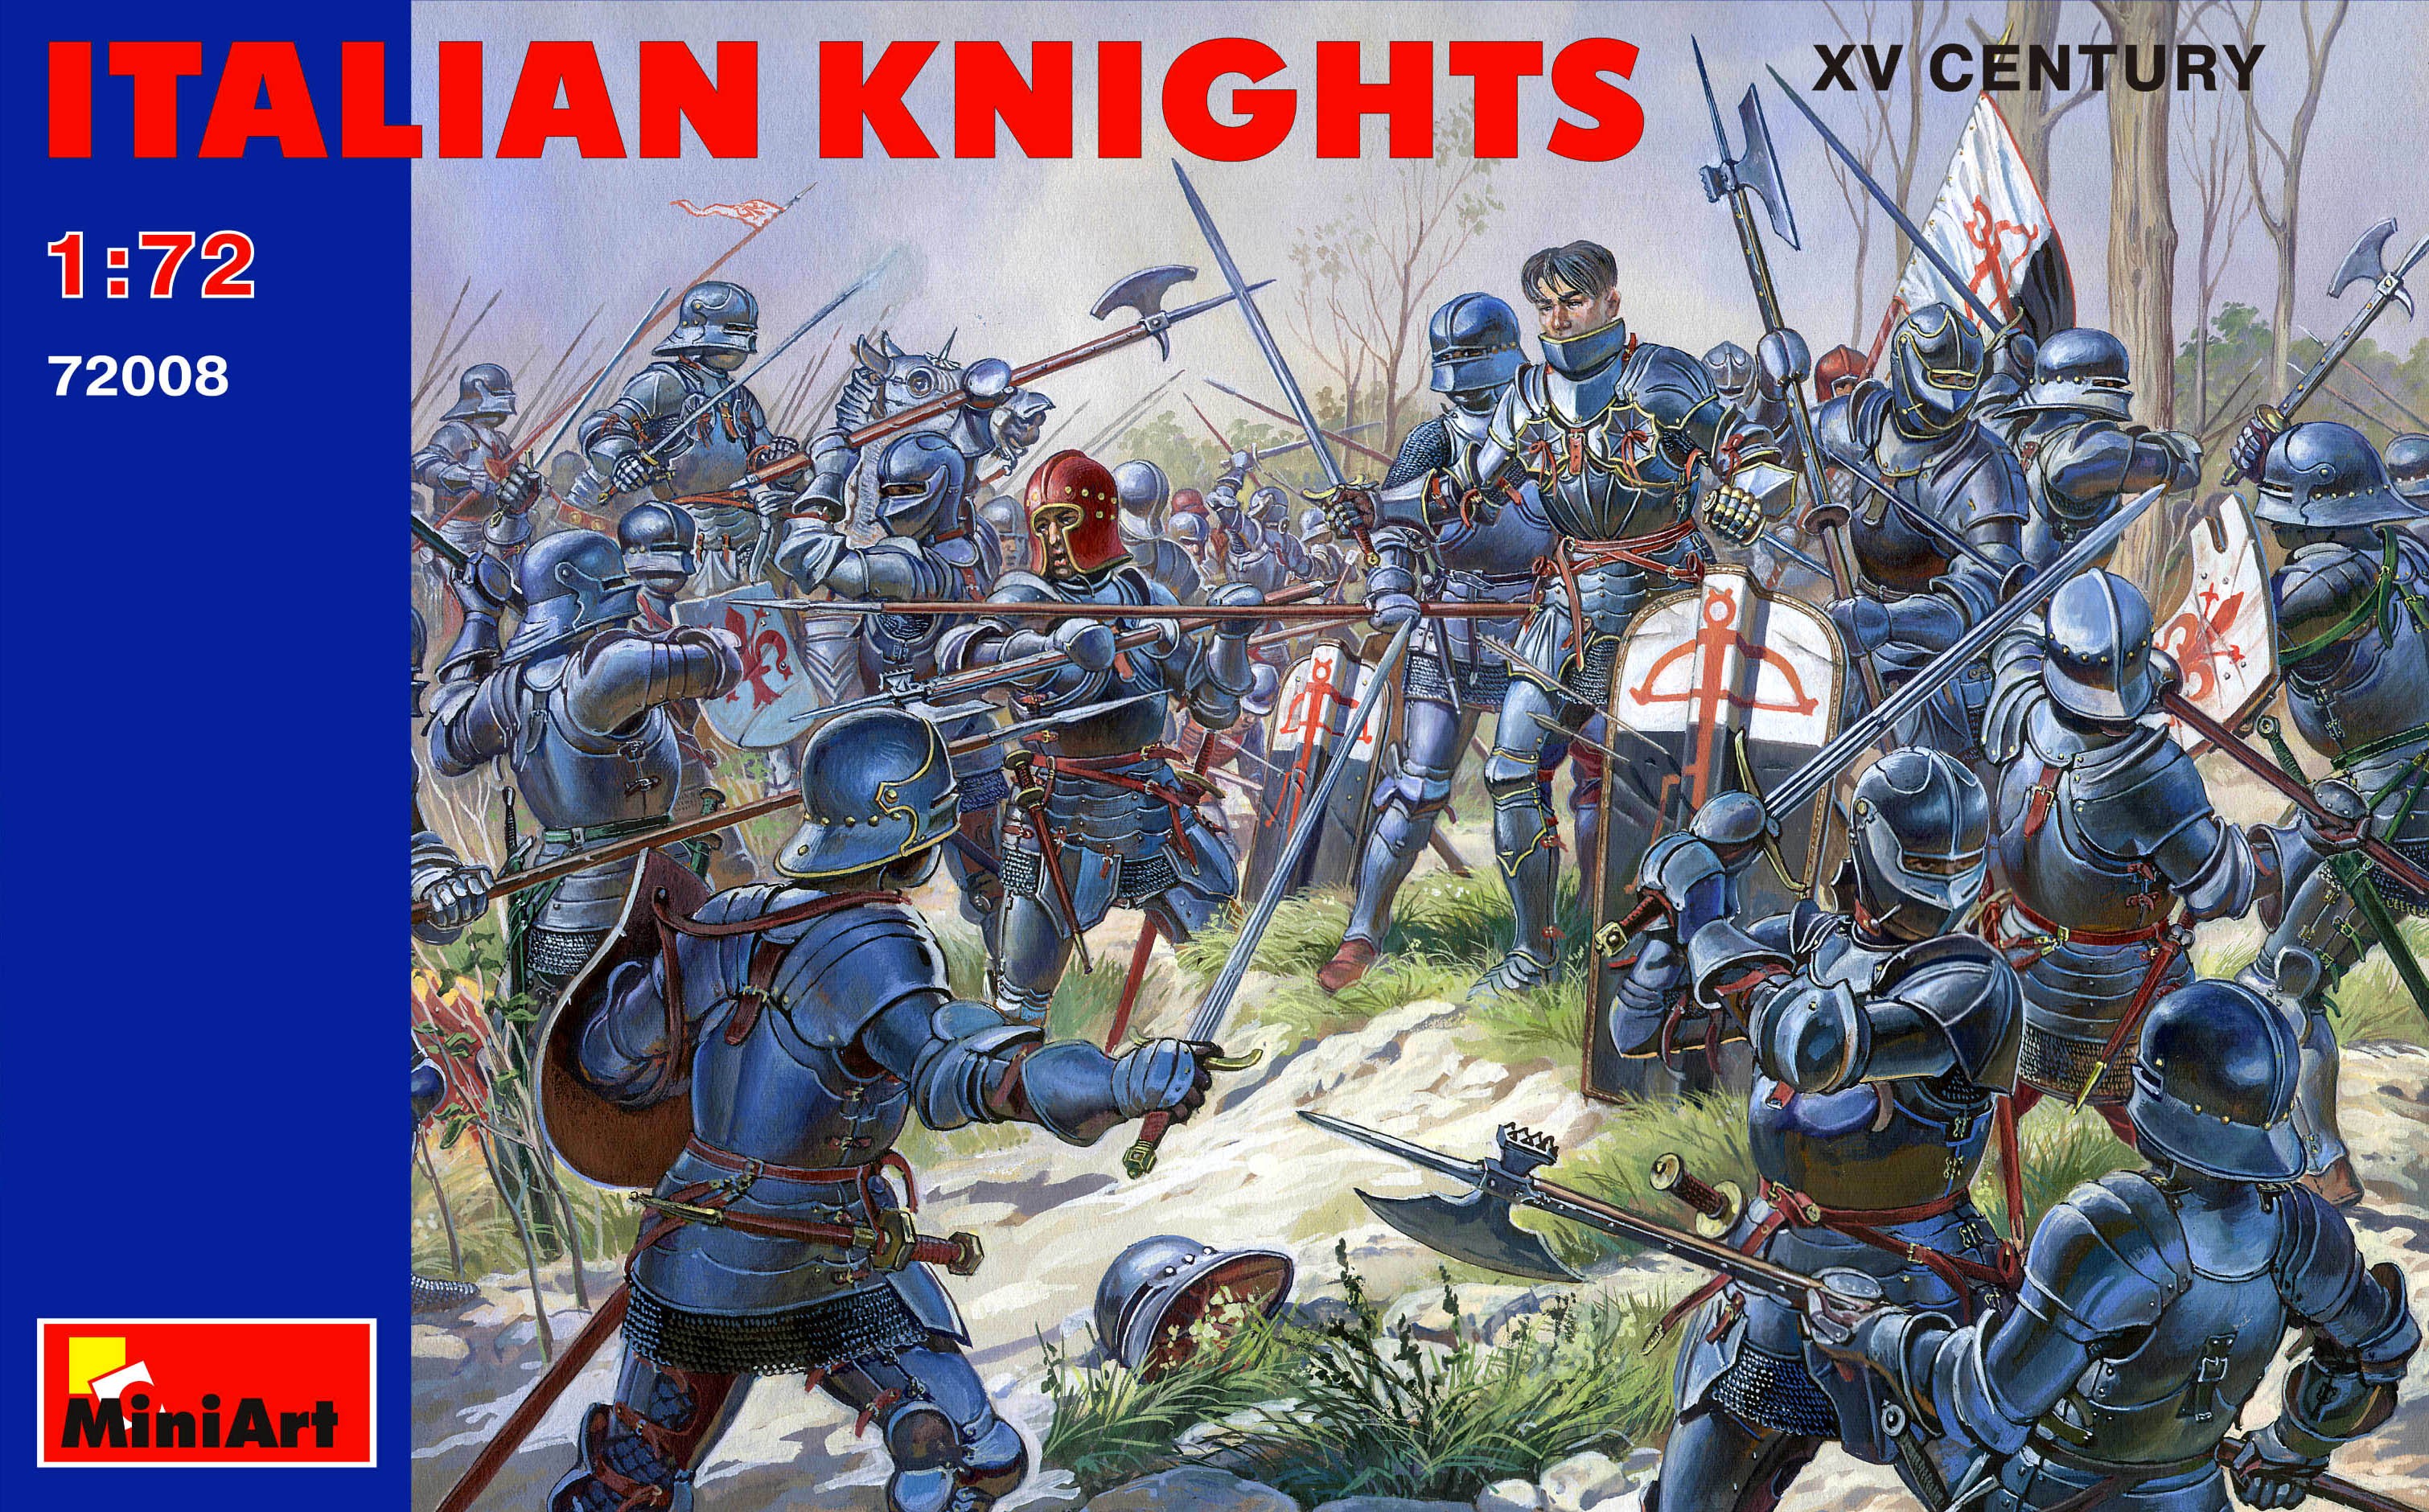 Italian knights - XV Century by MiniArt